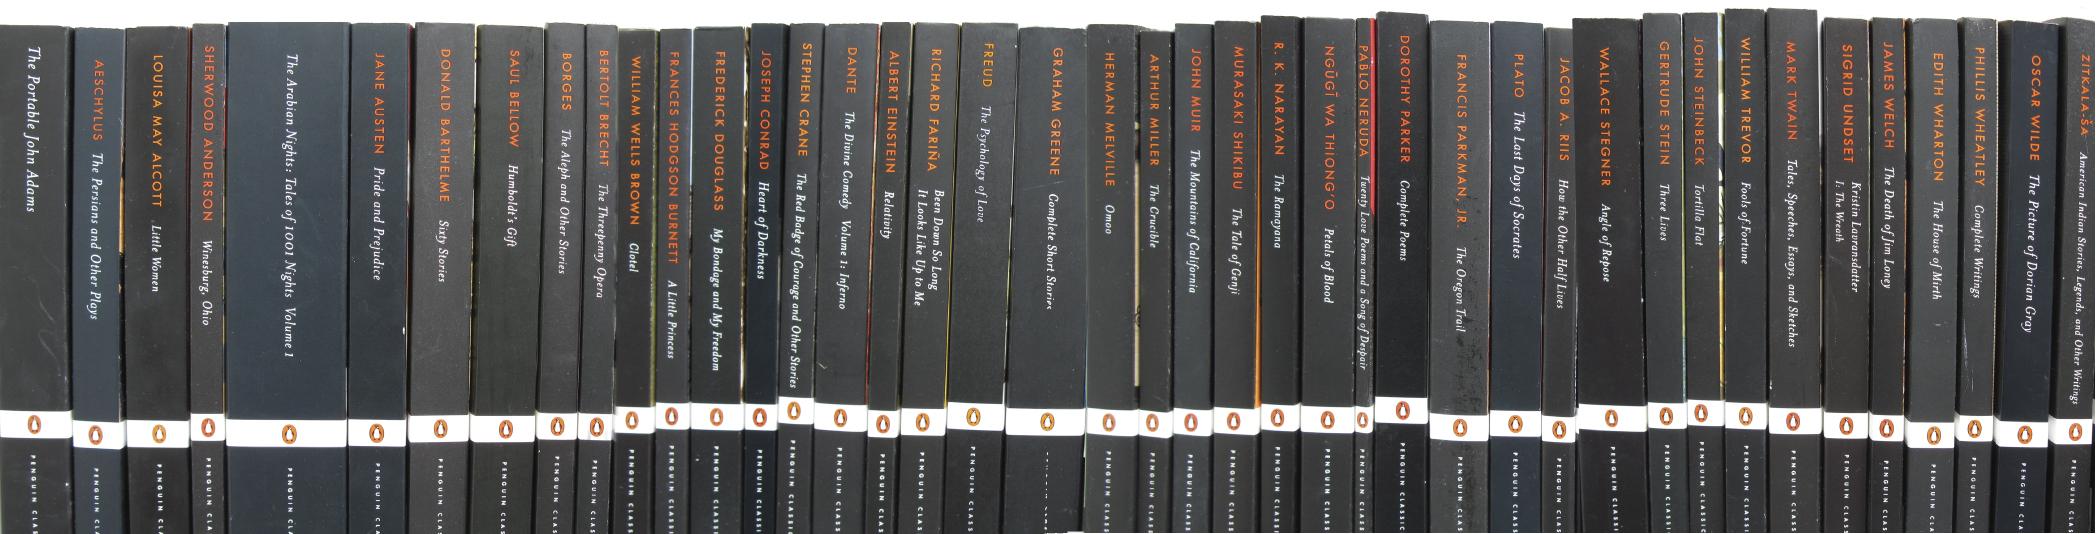 67 Penguin Classics (Black spine) ideas